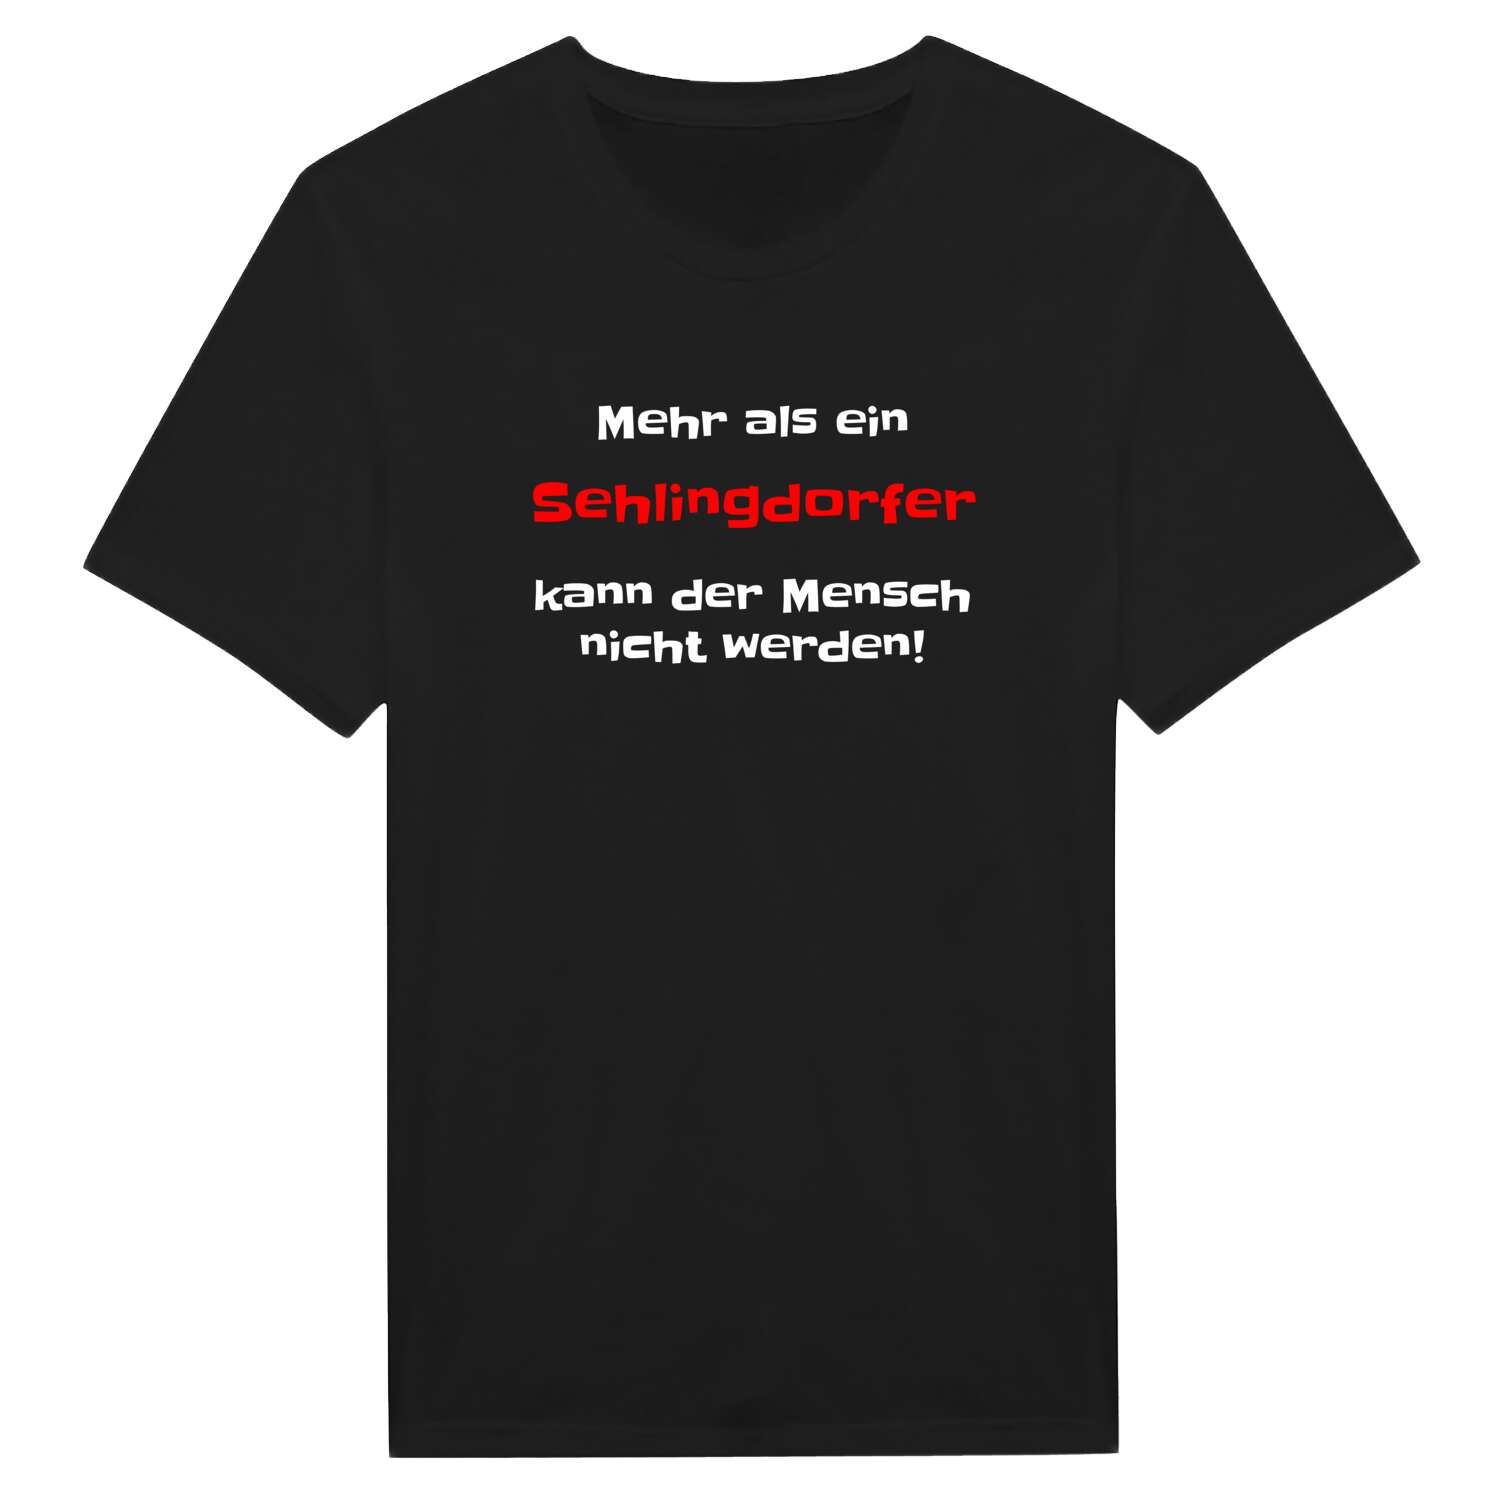 Sehlingdorf T-Shirt »Mehr als ein«